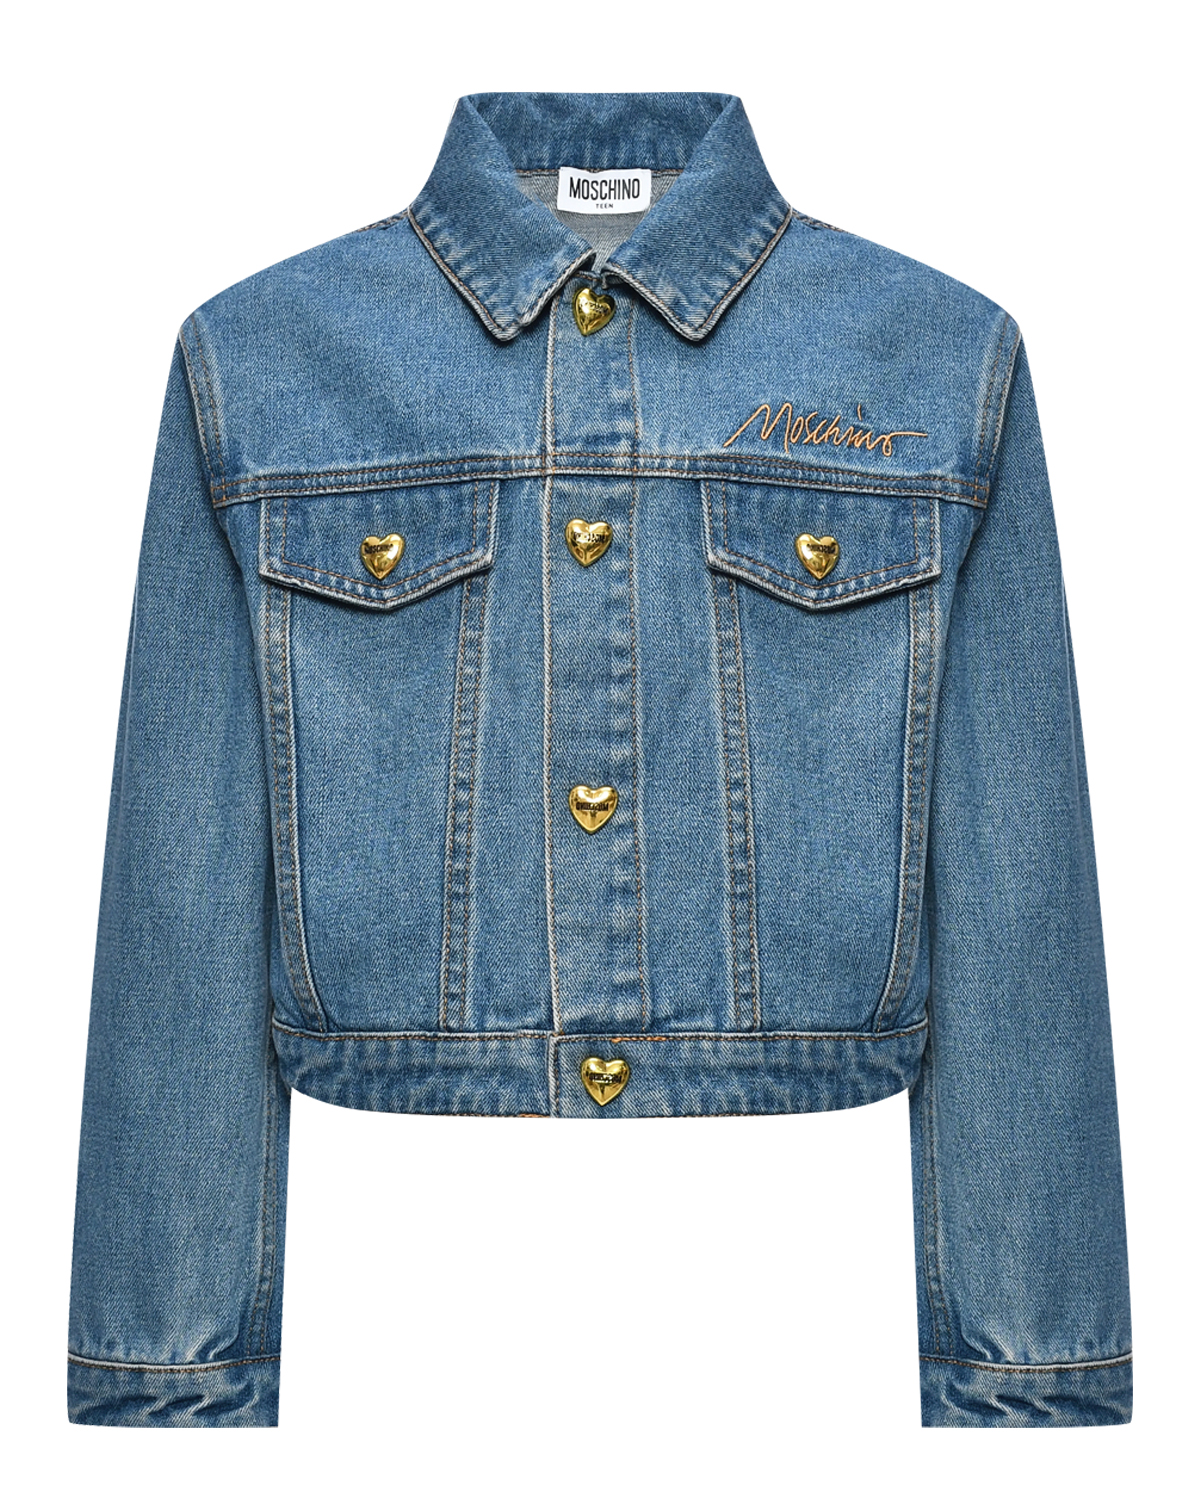 Джинсовая куртка с золотыми пуговицами Moschino, размер 140, цвет голубой